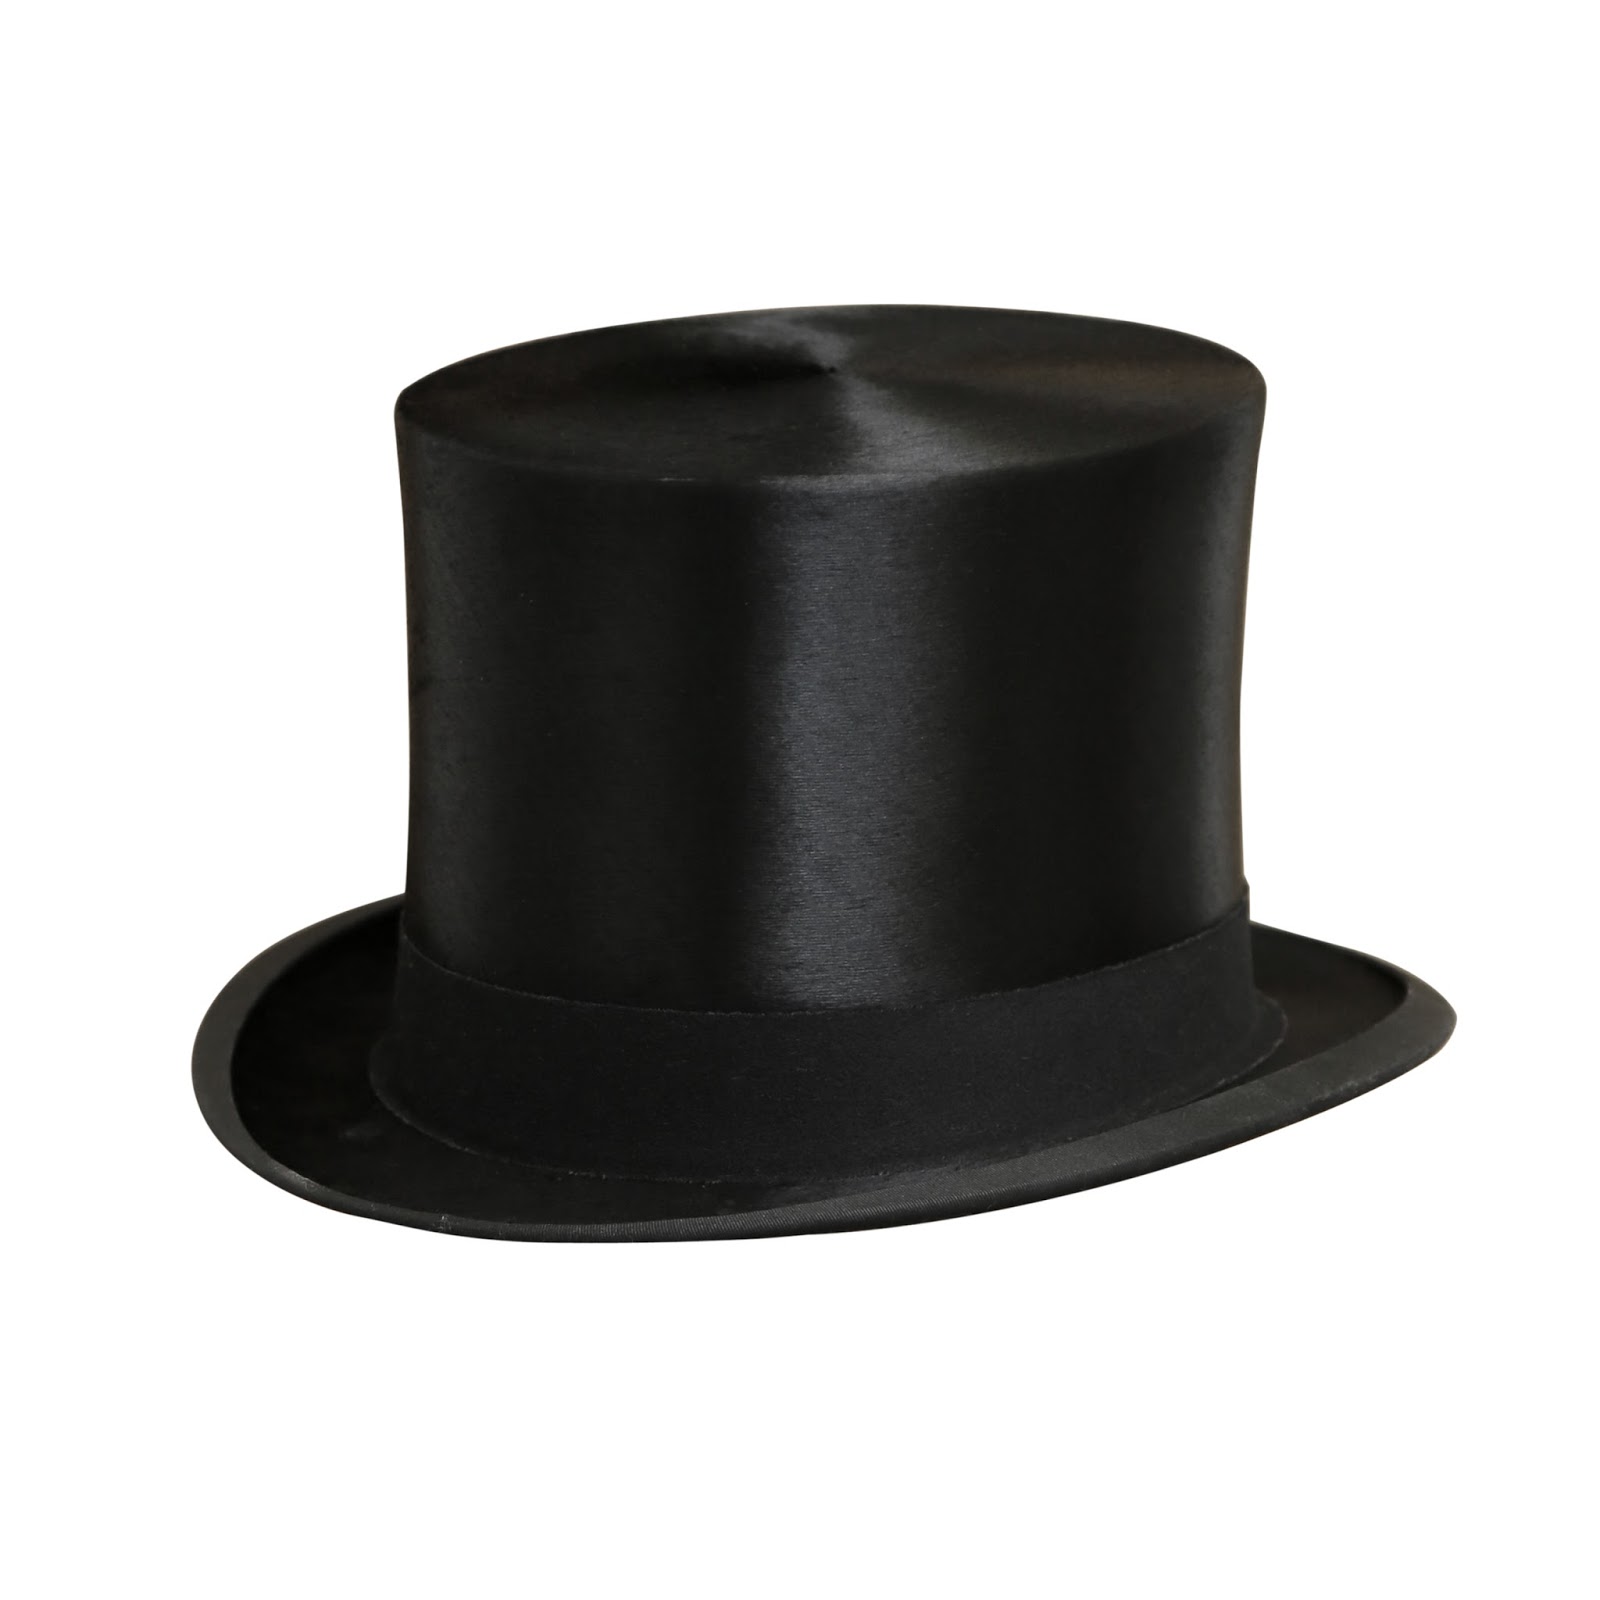 Шляпа цилиндр 8. Шляпа цилиндр. Шляпа черная. Черный цилиндр. Черная мужская шляпа.